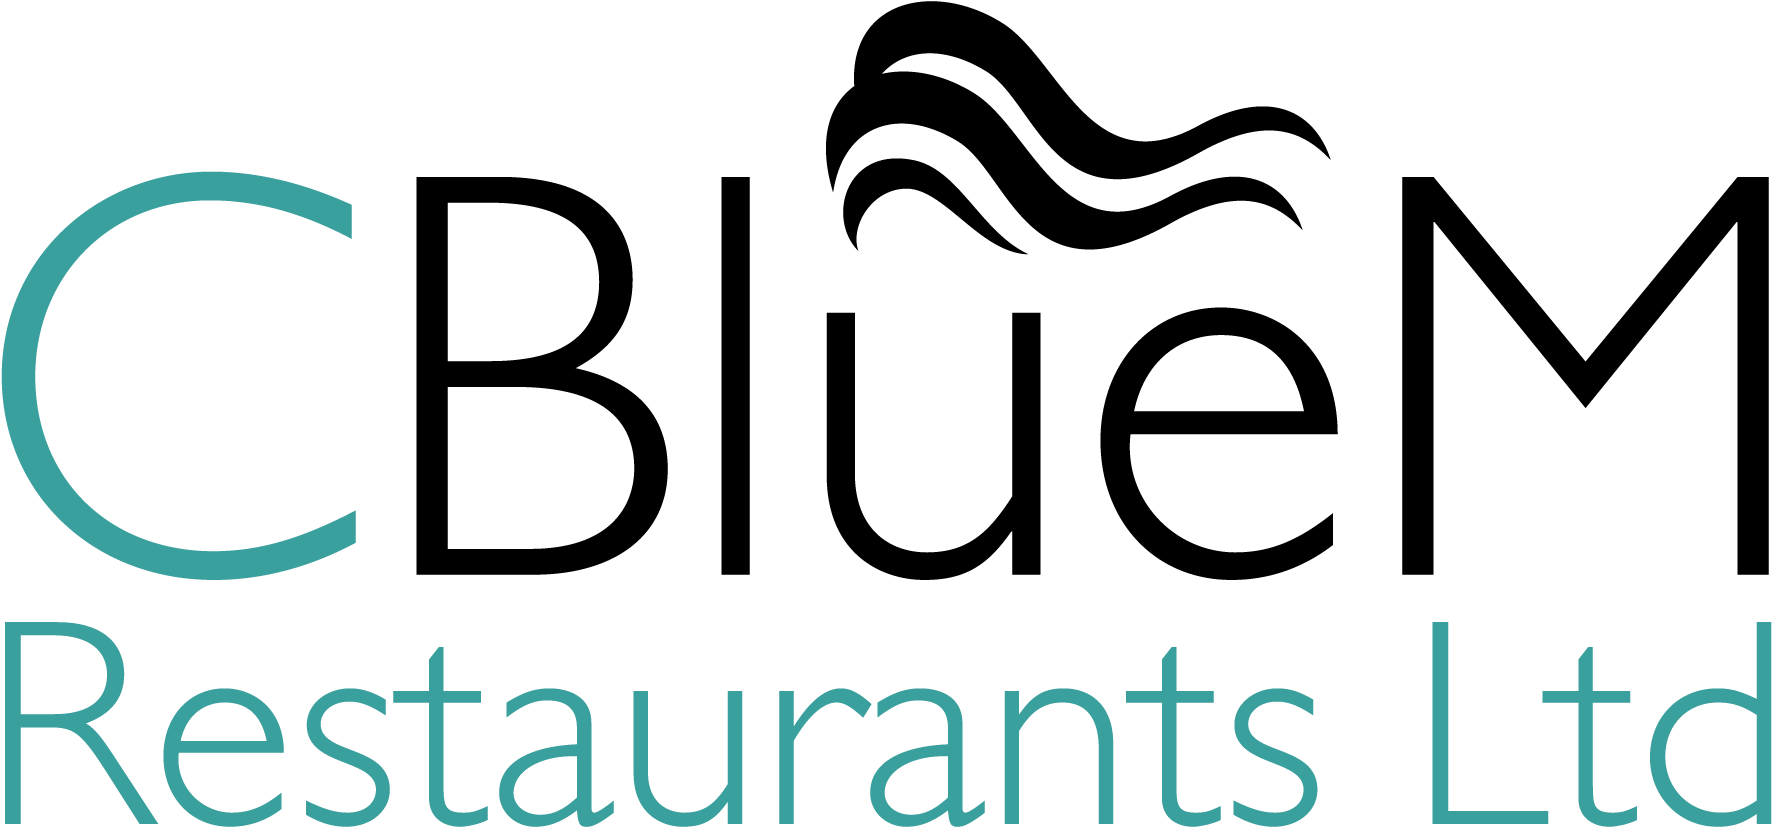 Blue M Restaurants Ltd Logo PNG image